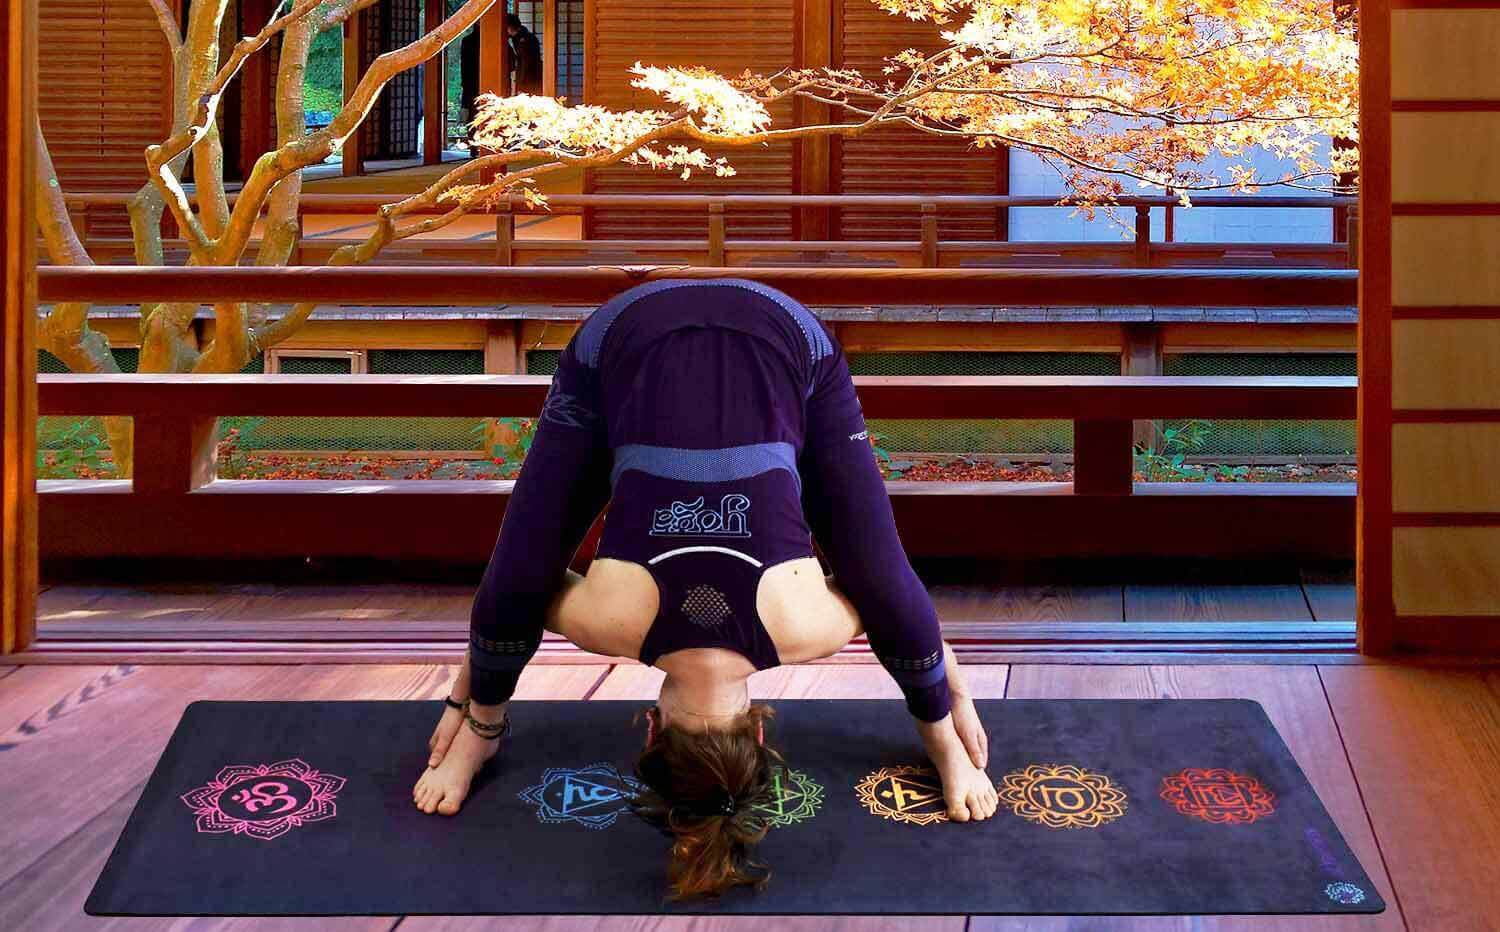 Yogini posture inversée en legging sans couture violet Lotus sur tapis de yoga liege dans une salle d'un temple bouddhiste - Achamana